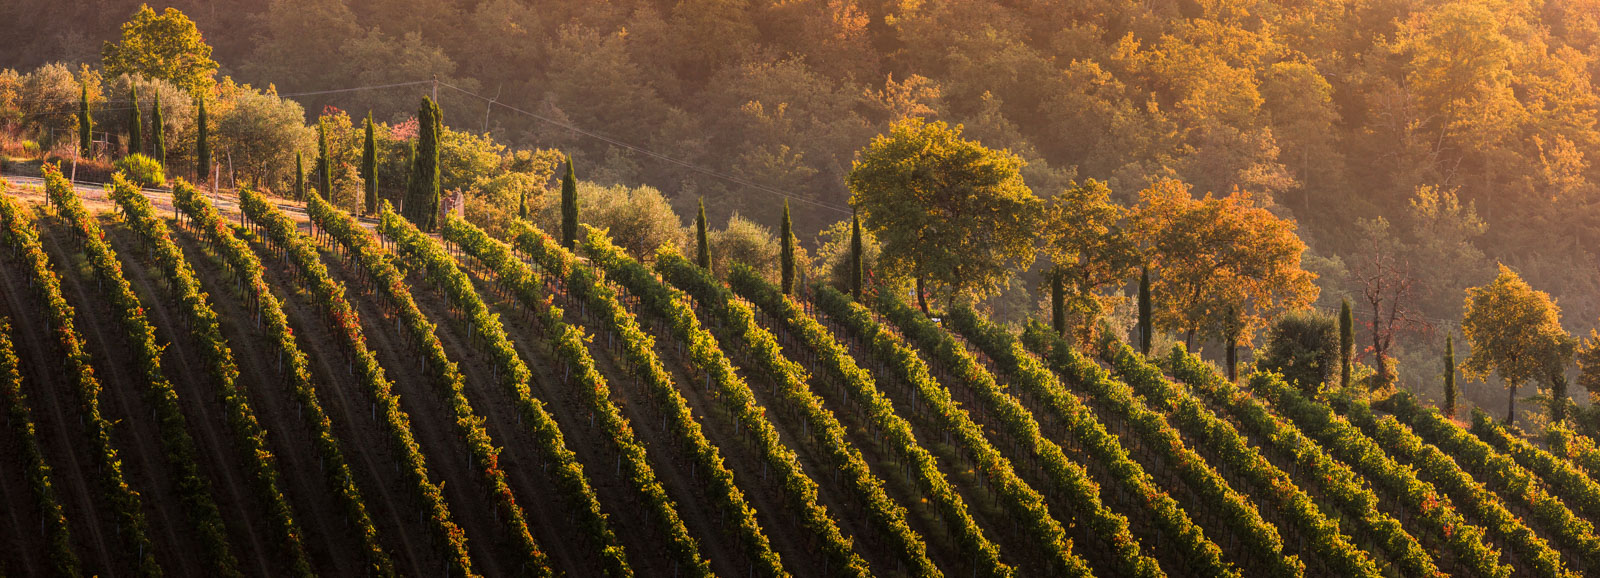 Radda in Chianti vigne cipressi